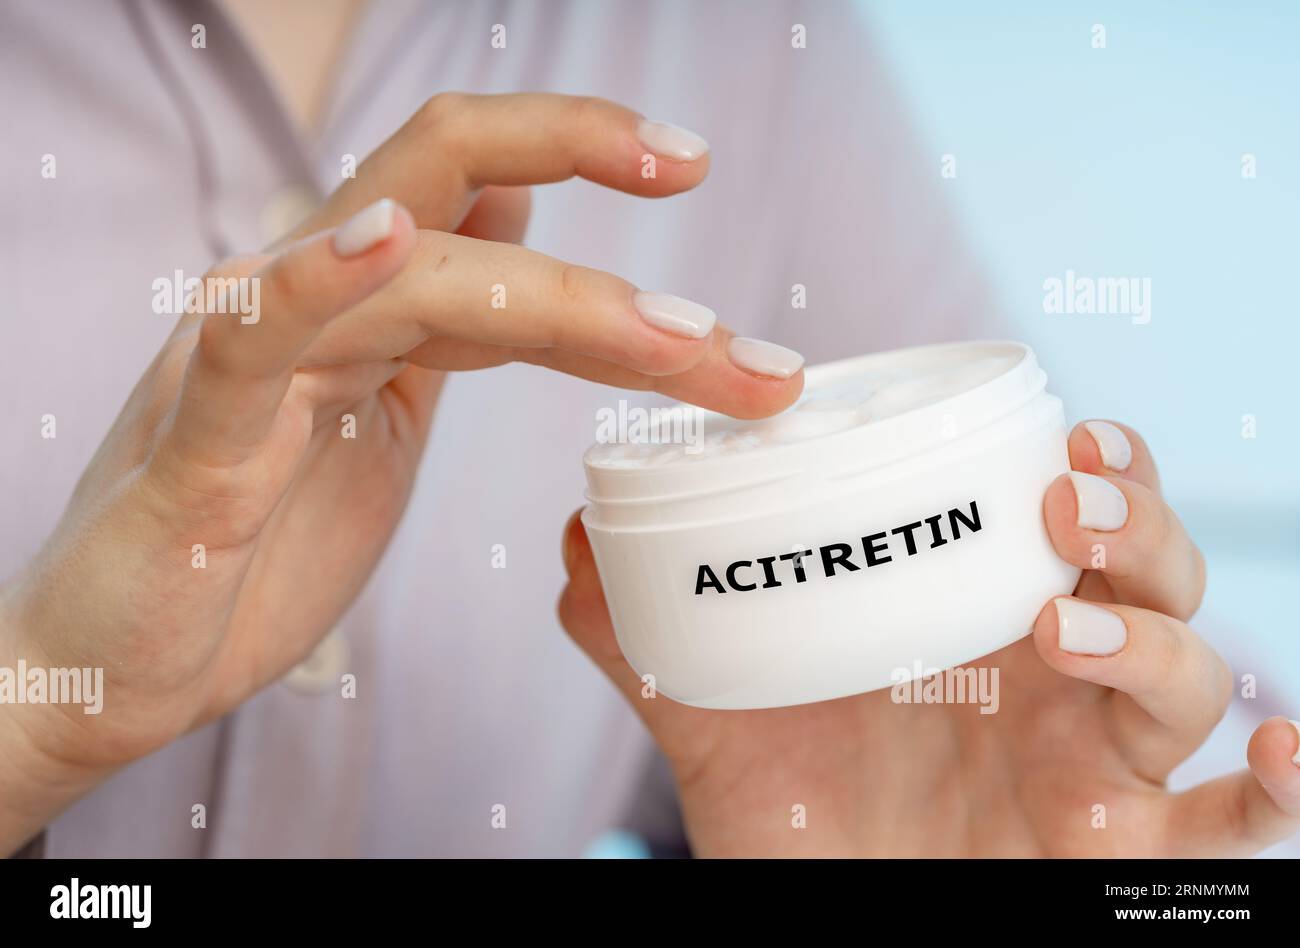 Acitretin: Eine Retinoid-Creme zur Behandlung schwerer Psoriasis durch Verlangsamung des Wachstums von Hautzellen und Verringerung von Entzündungen. Stockfoto